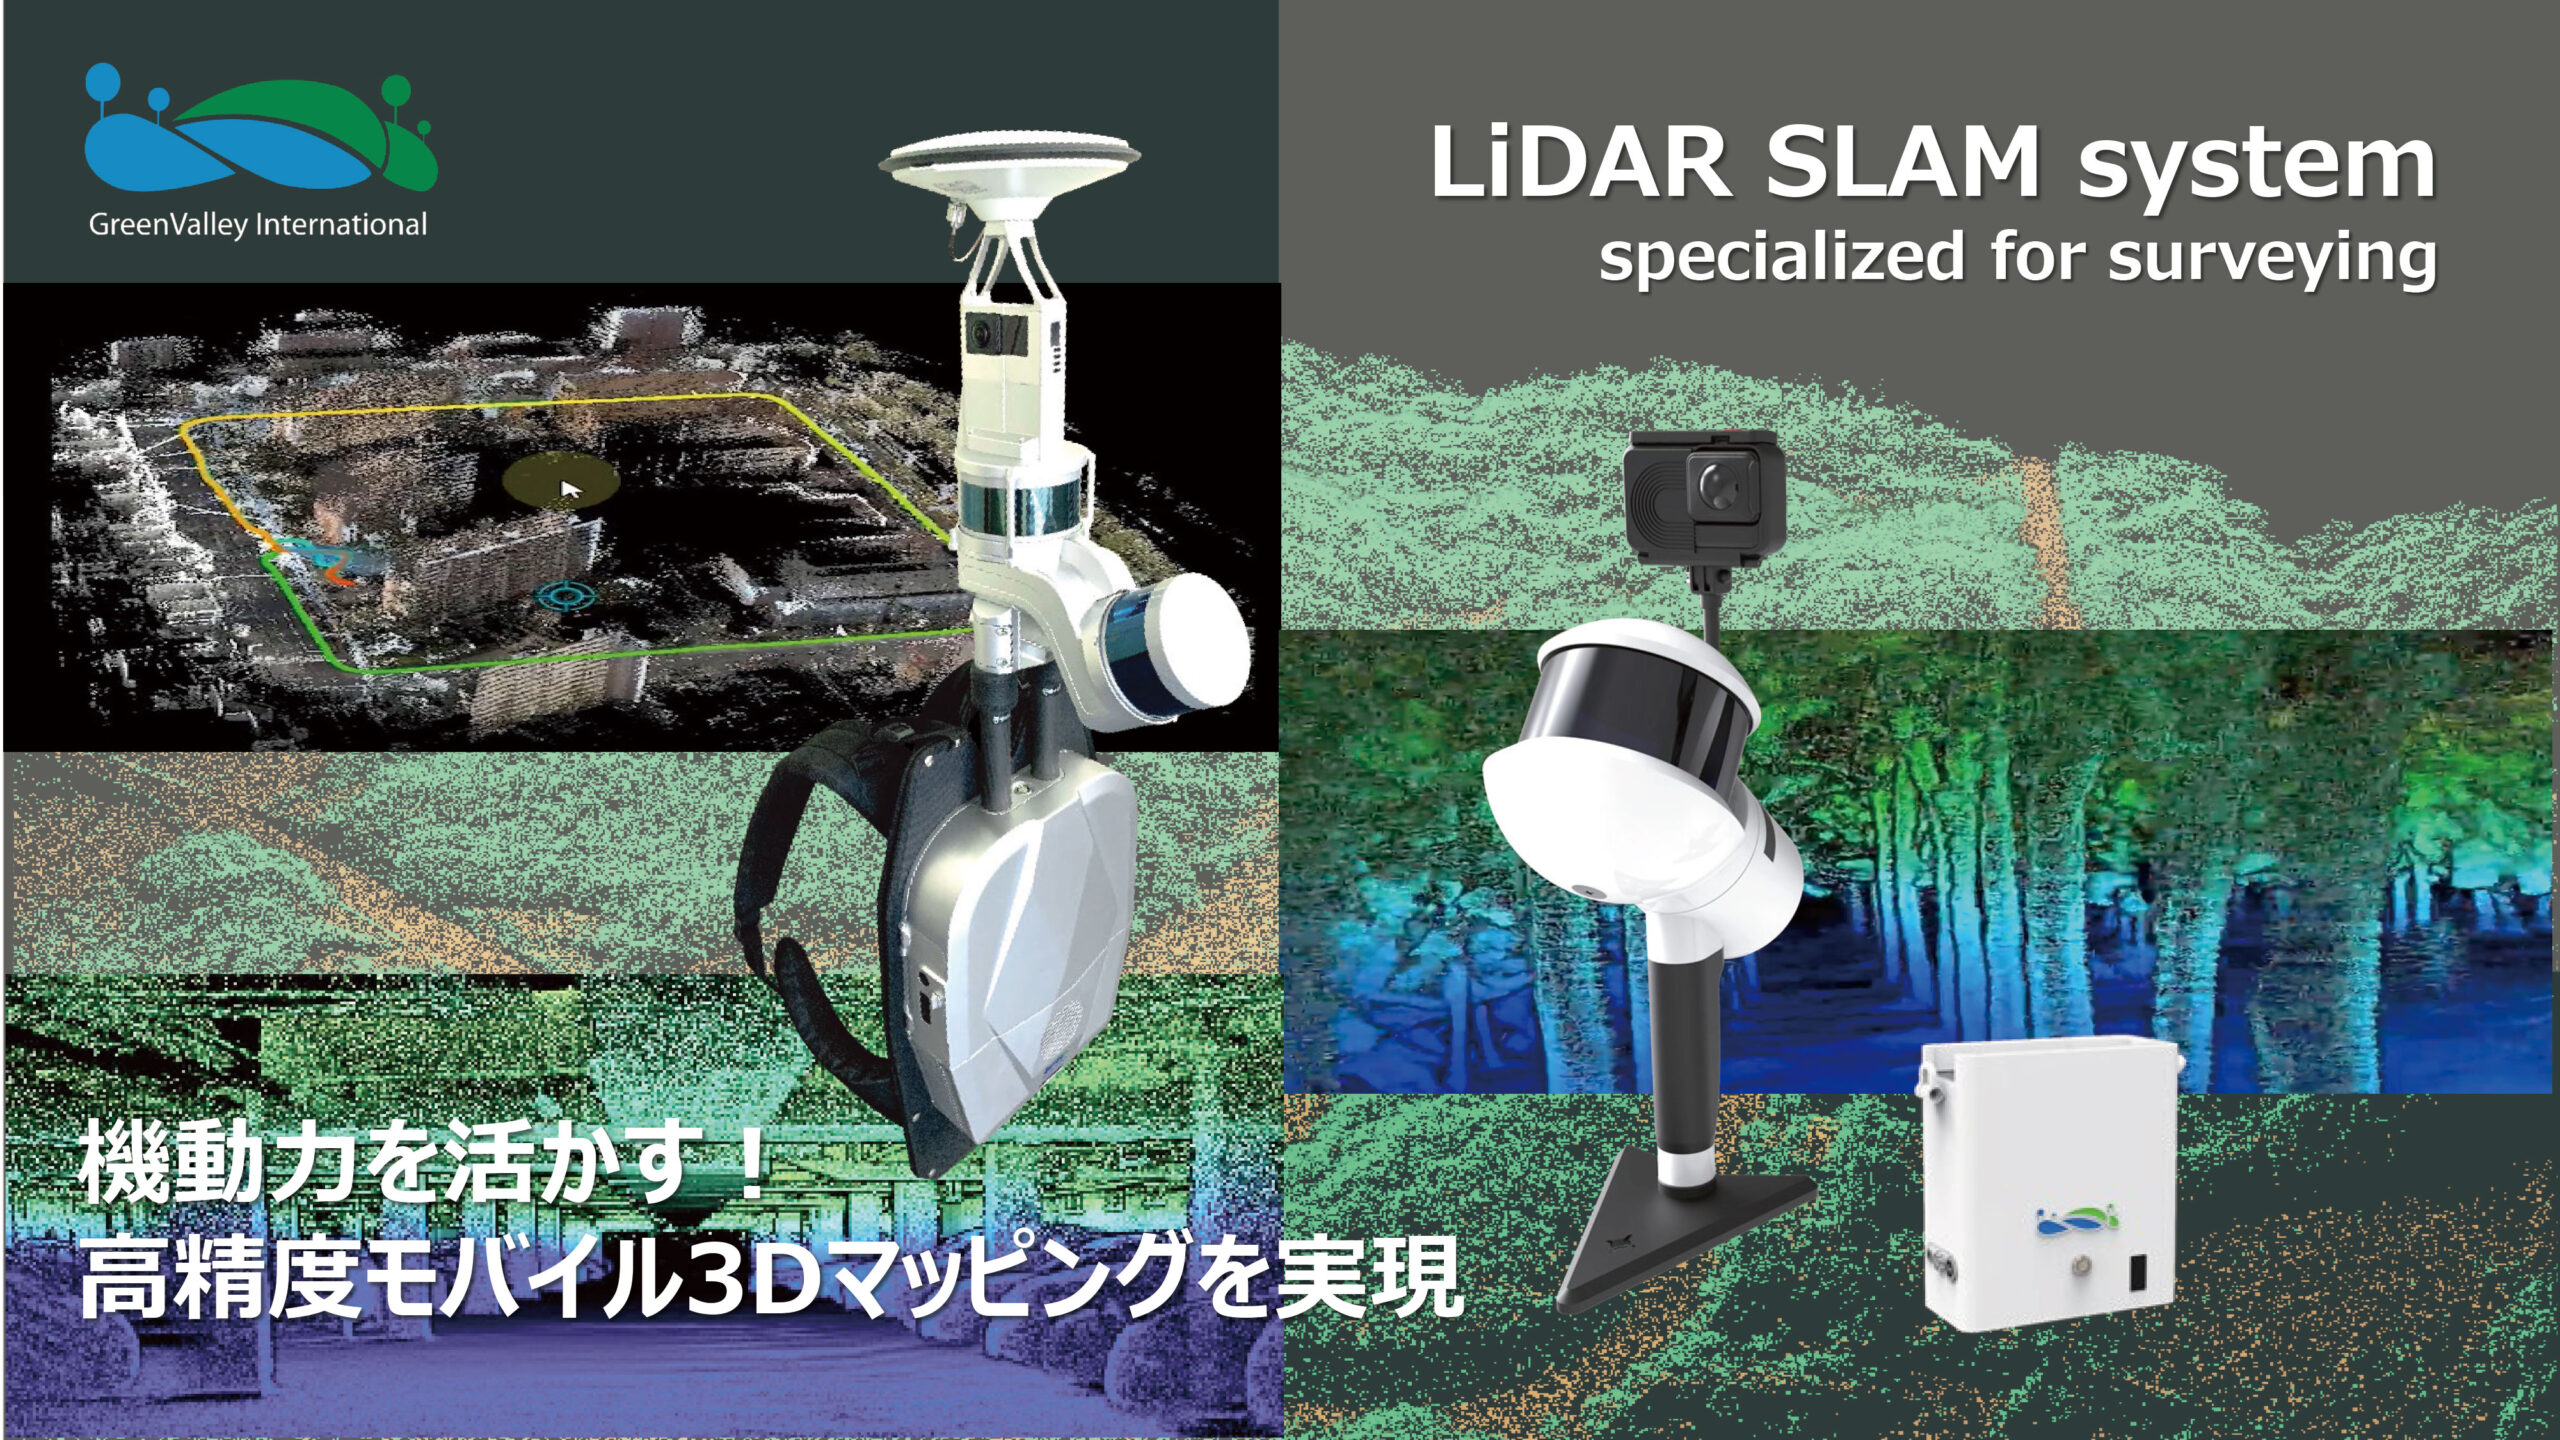 LiDAR SLAM system